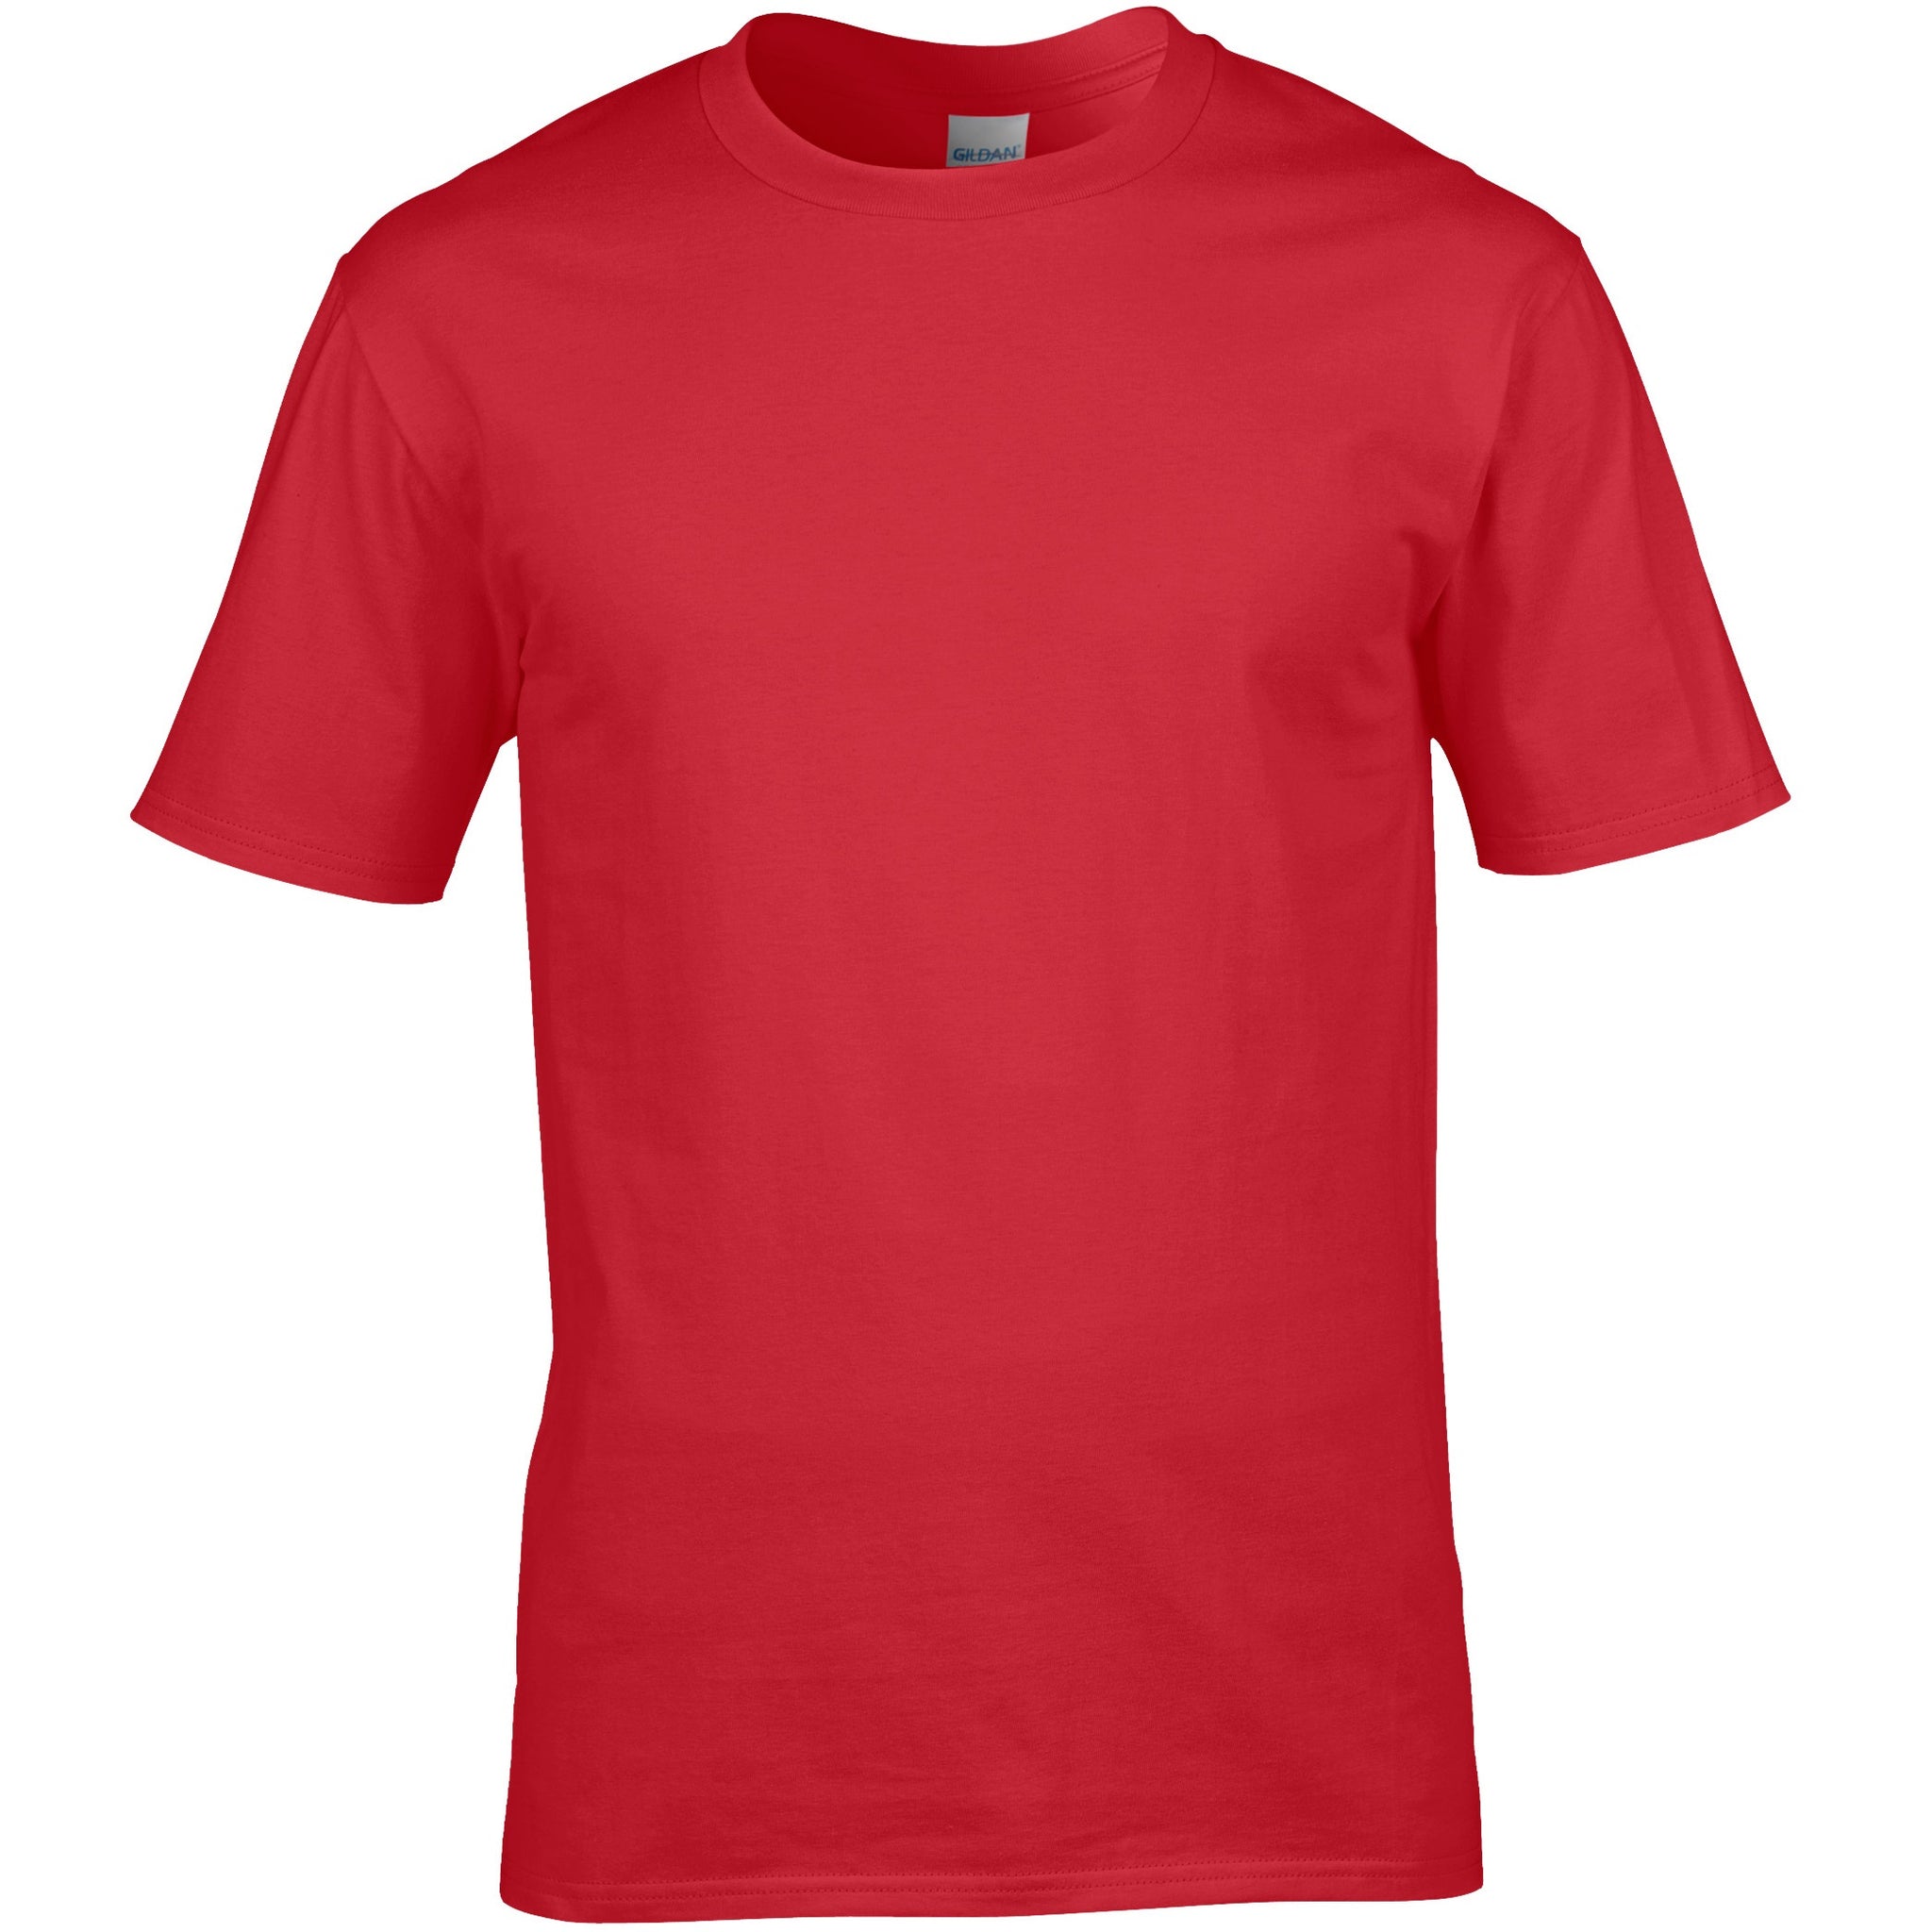 Red Cotton T Shirt - choose logo